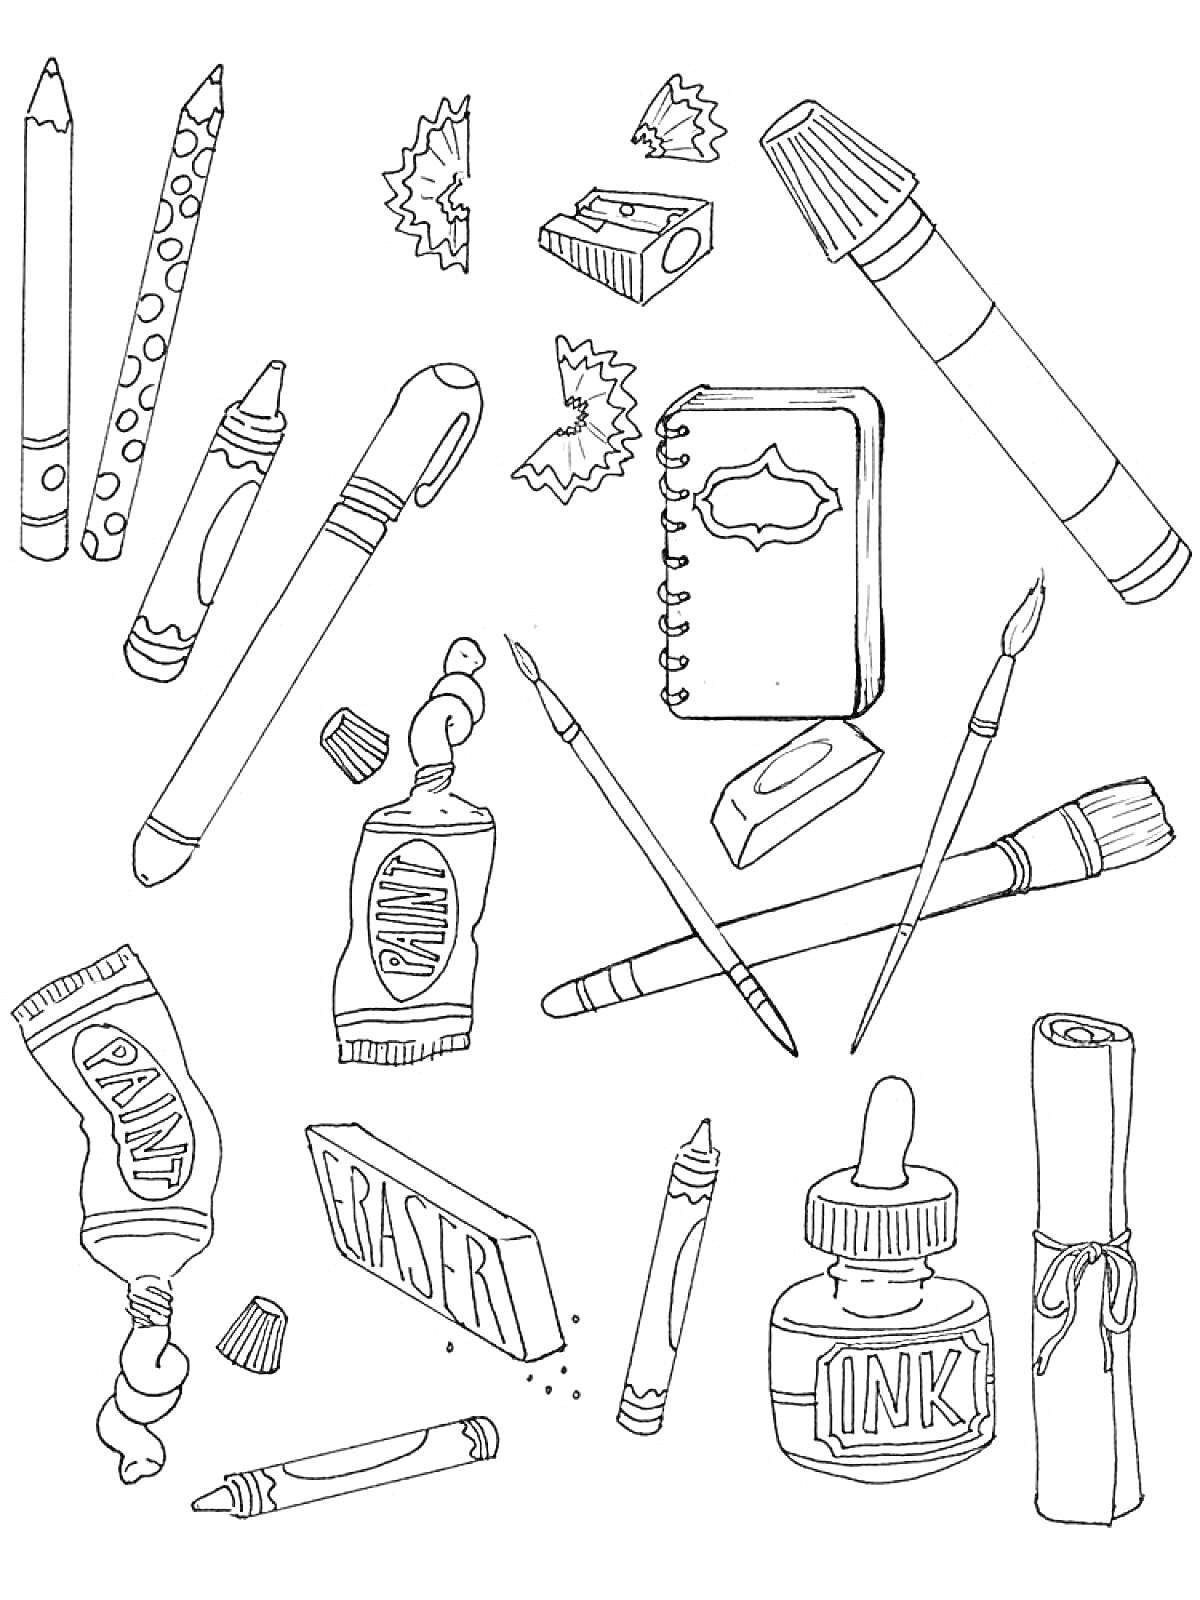 Школьные принадлежности: карандаши, кусочки точилки, фломастер, мелки, точилка, блокнот, кисточки, ластик, краска, ручка, чернила, свёрток бумаги